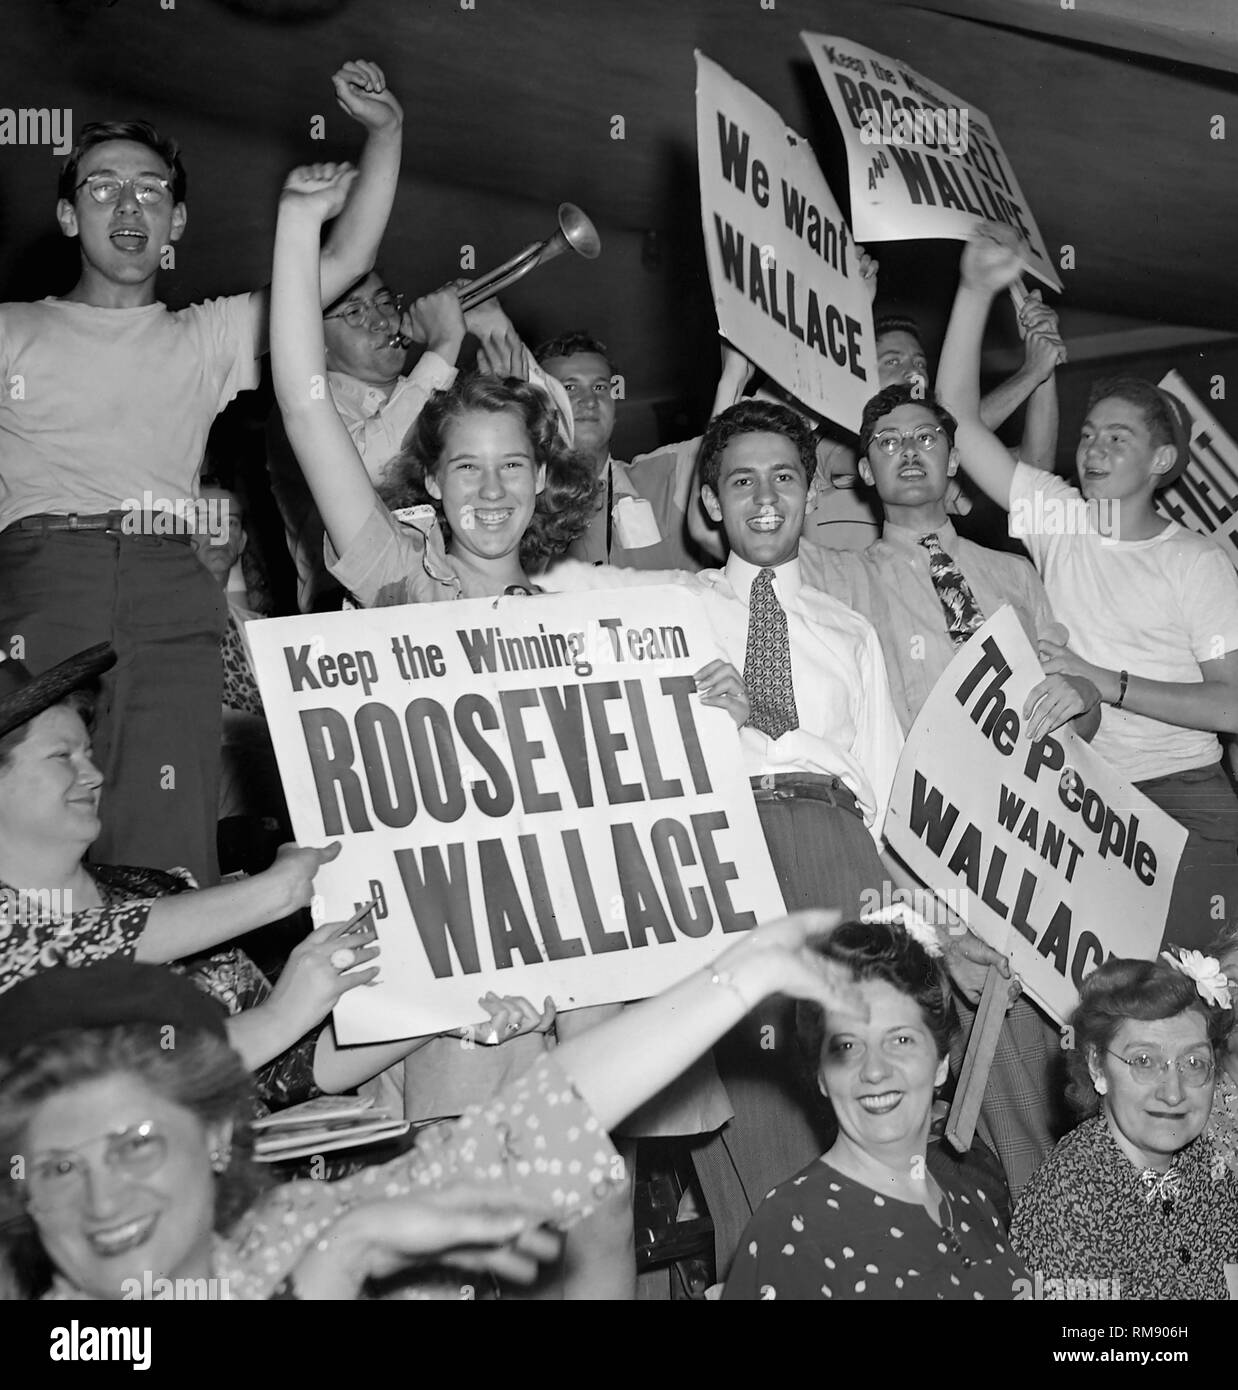 Los delegados con Roosevelt/Wallace signos en la Convención Nacional Demócrata en Chicago Stadium 1940. Foto de stock